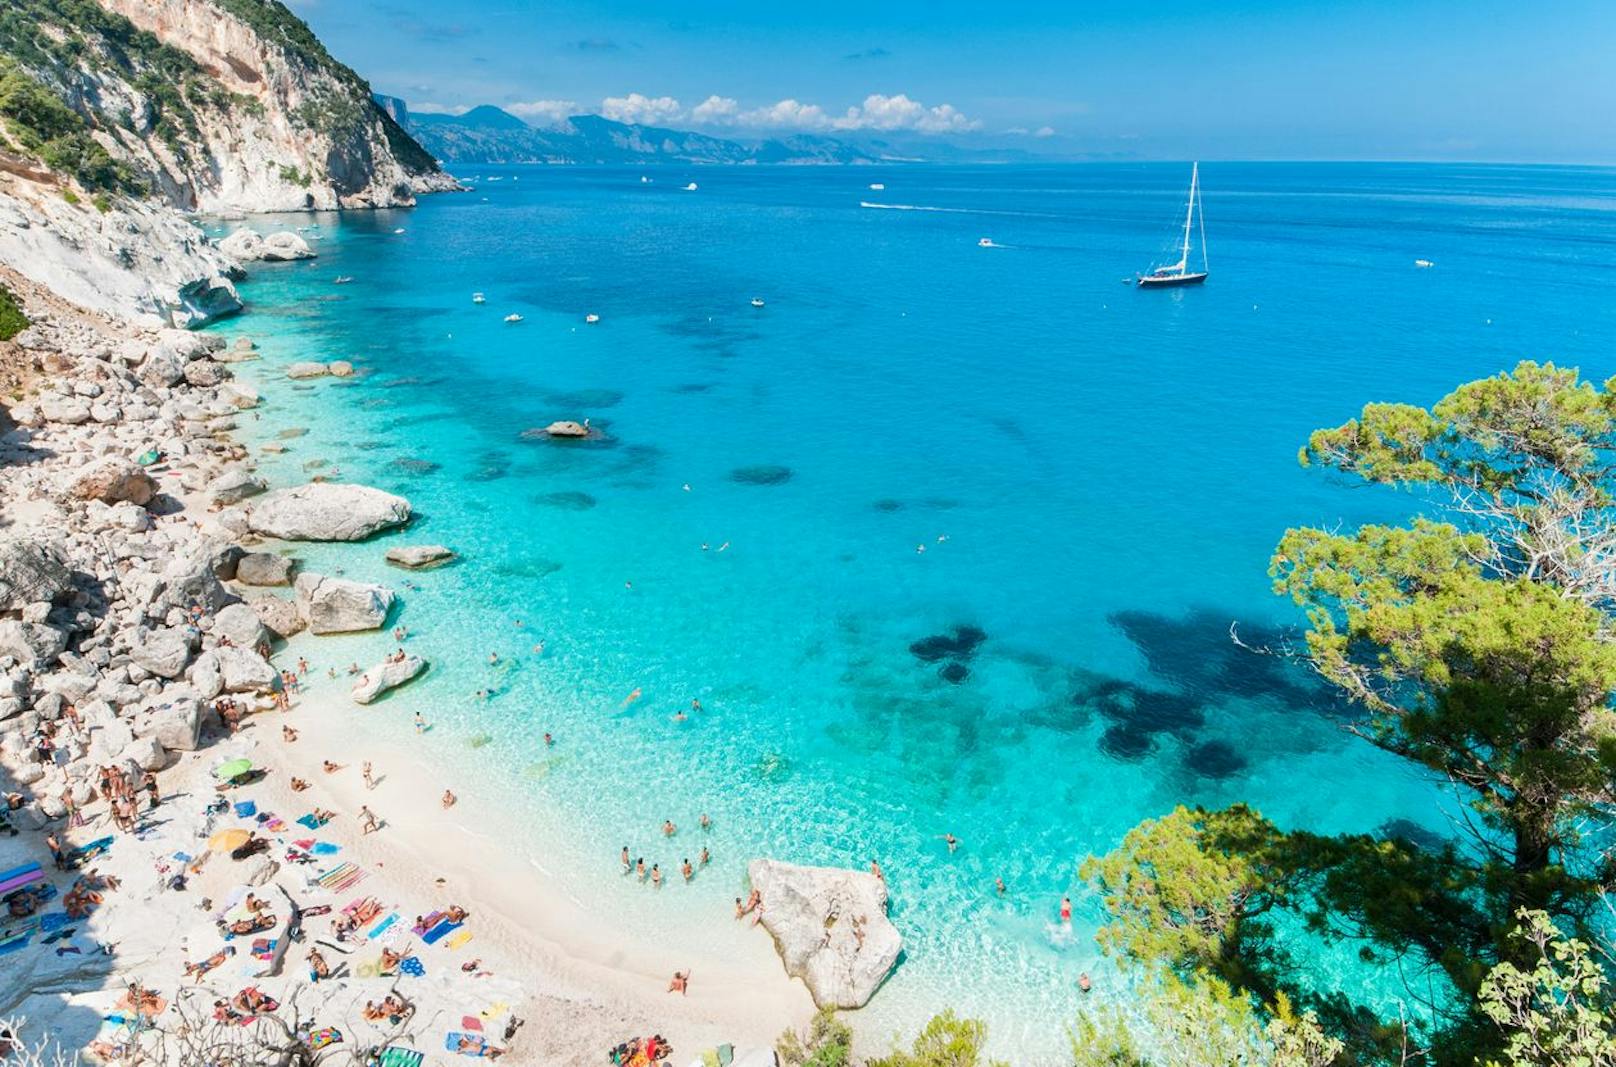 Die Traumbucht Cala Goloritzè auf Sardinien ist aufgrund des kristallklaren Wassers, des strahlend weißen Kiesstrandes und der steilen Felswände eine wahre Instagram-Berühmtheit.